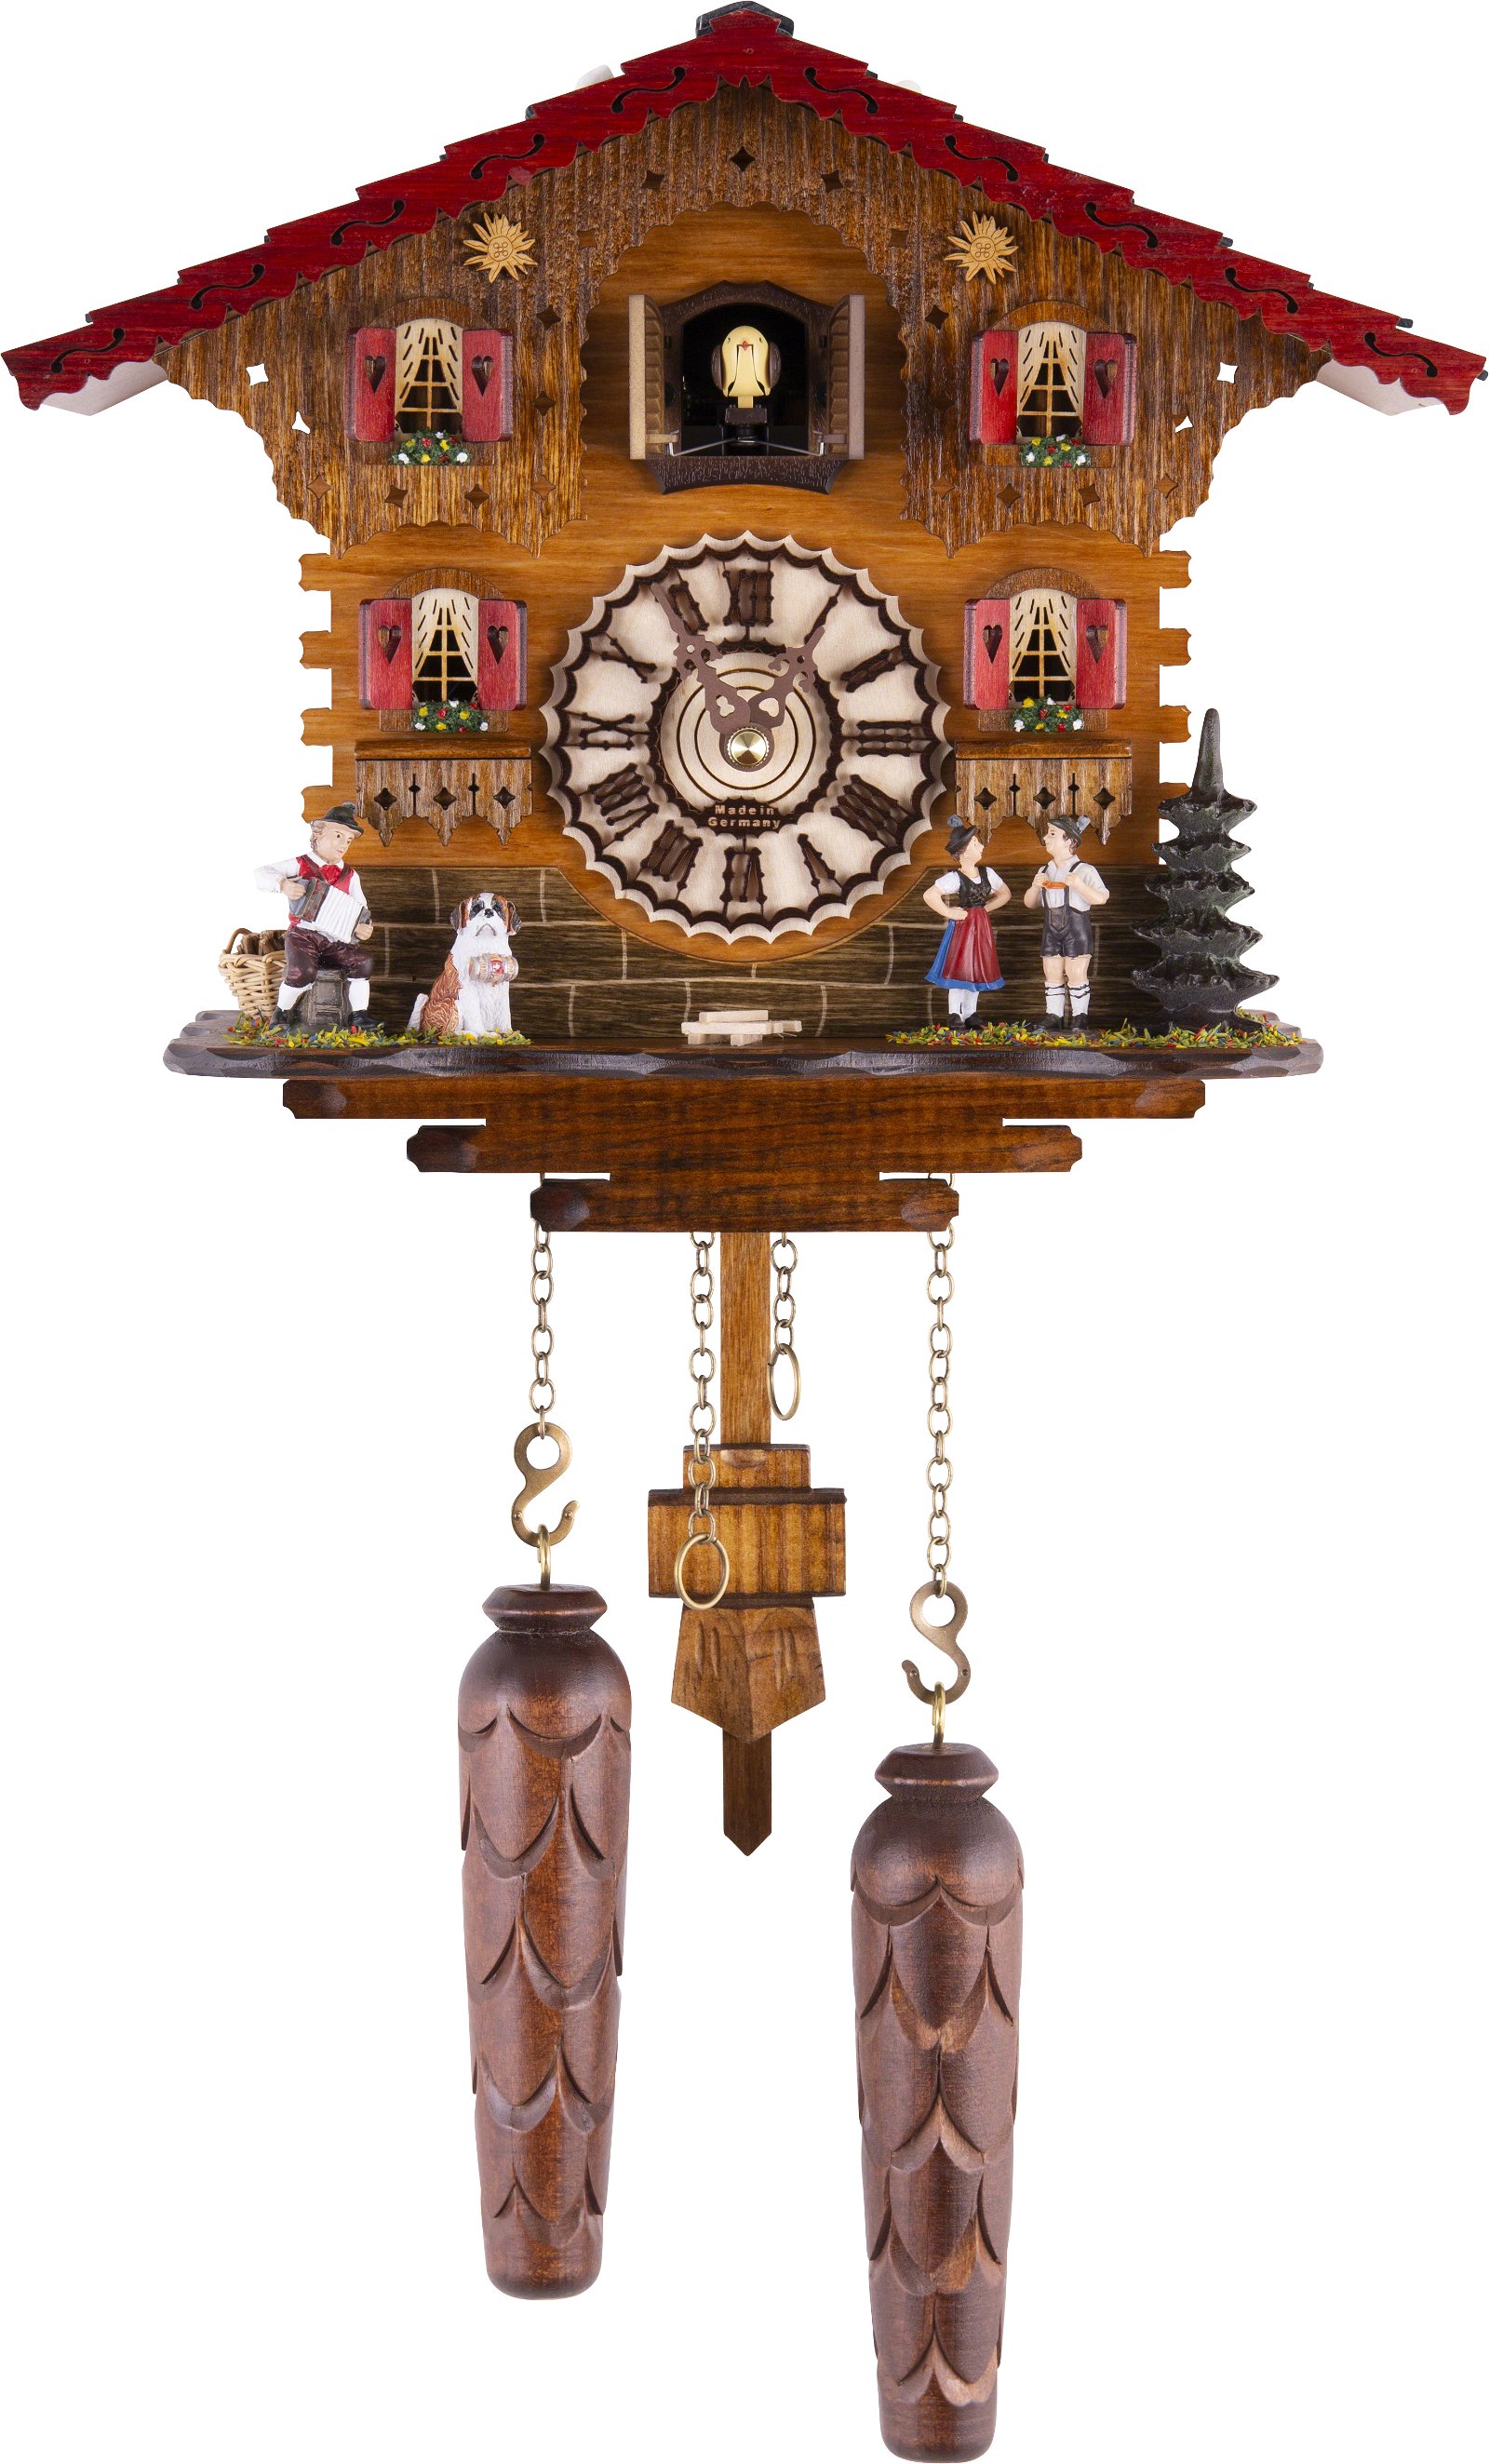 Kuckucksuhr Quarz-Uhrwerk Chalet-Stil 23cm von Trenkle Uhren